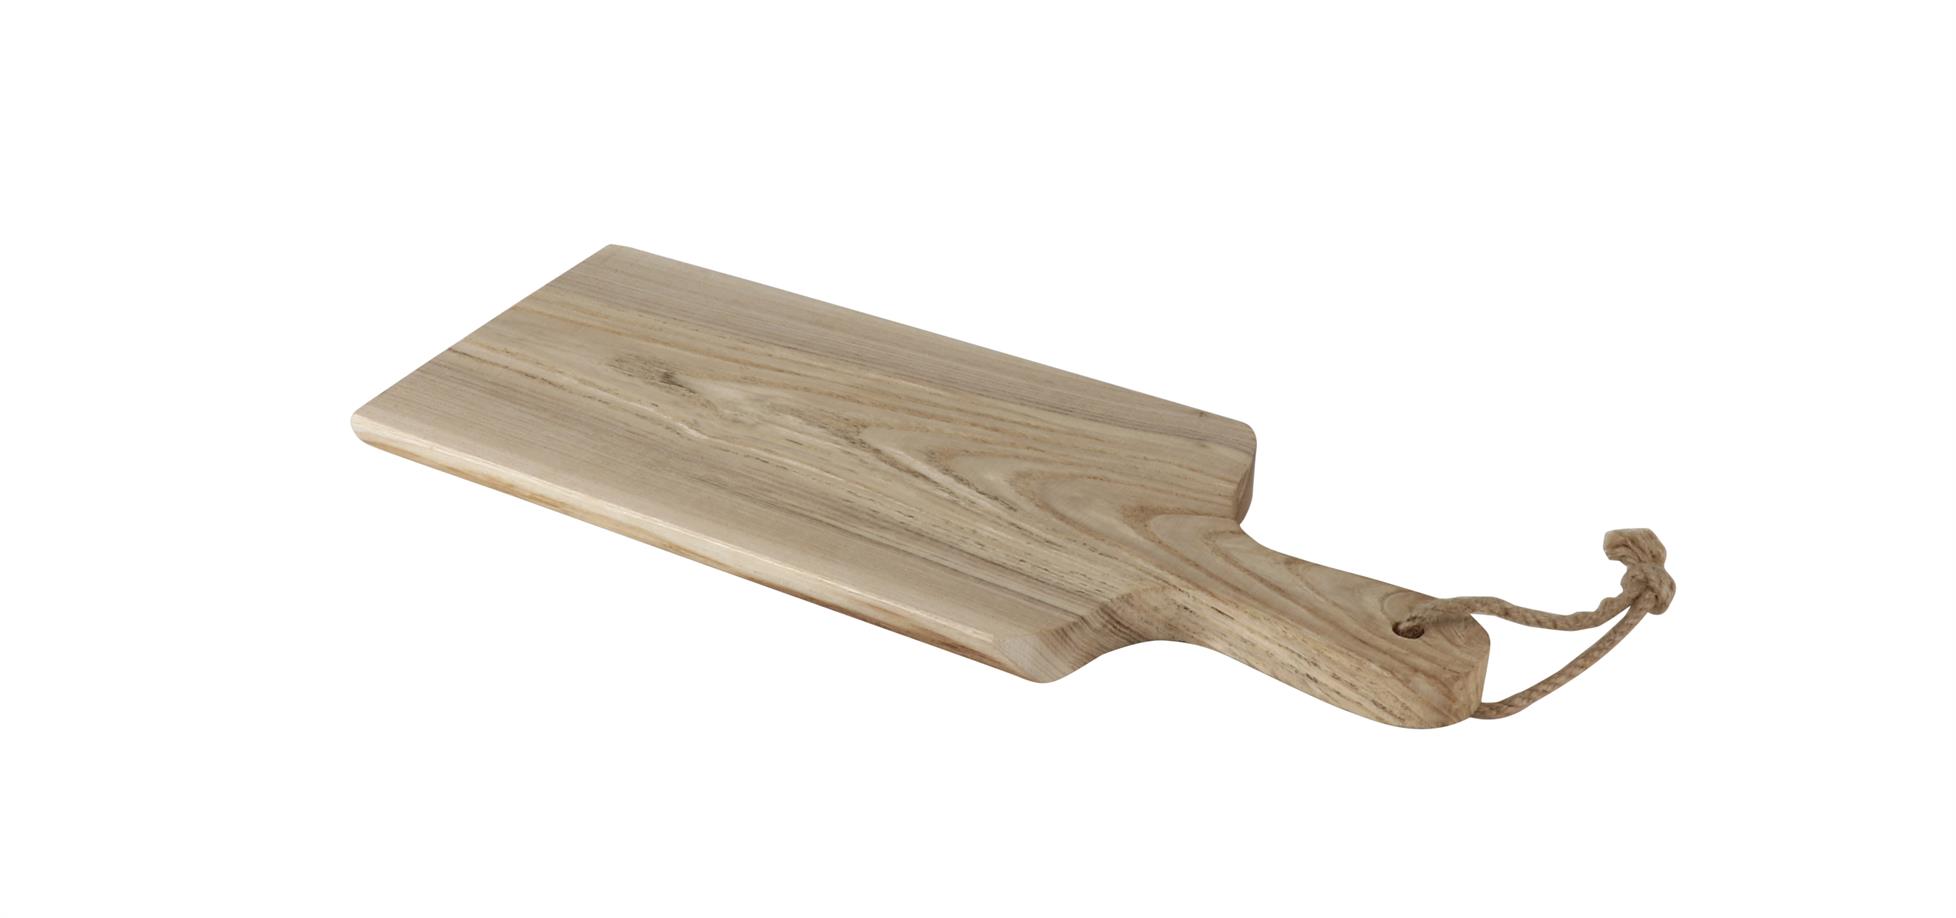 Picture of Ruwhouten plank ca. 34x15x1,6 cm met greep (uc)